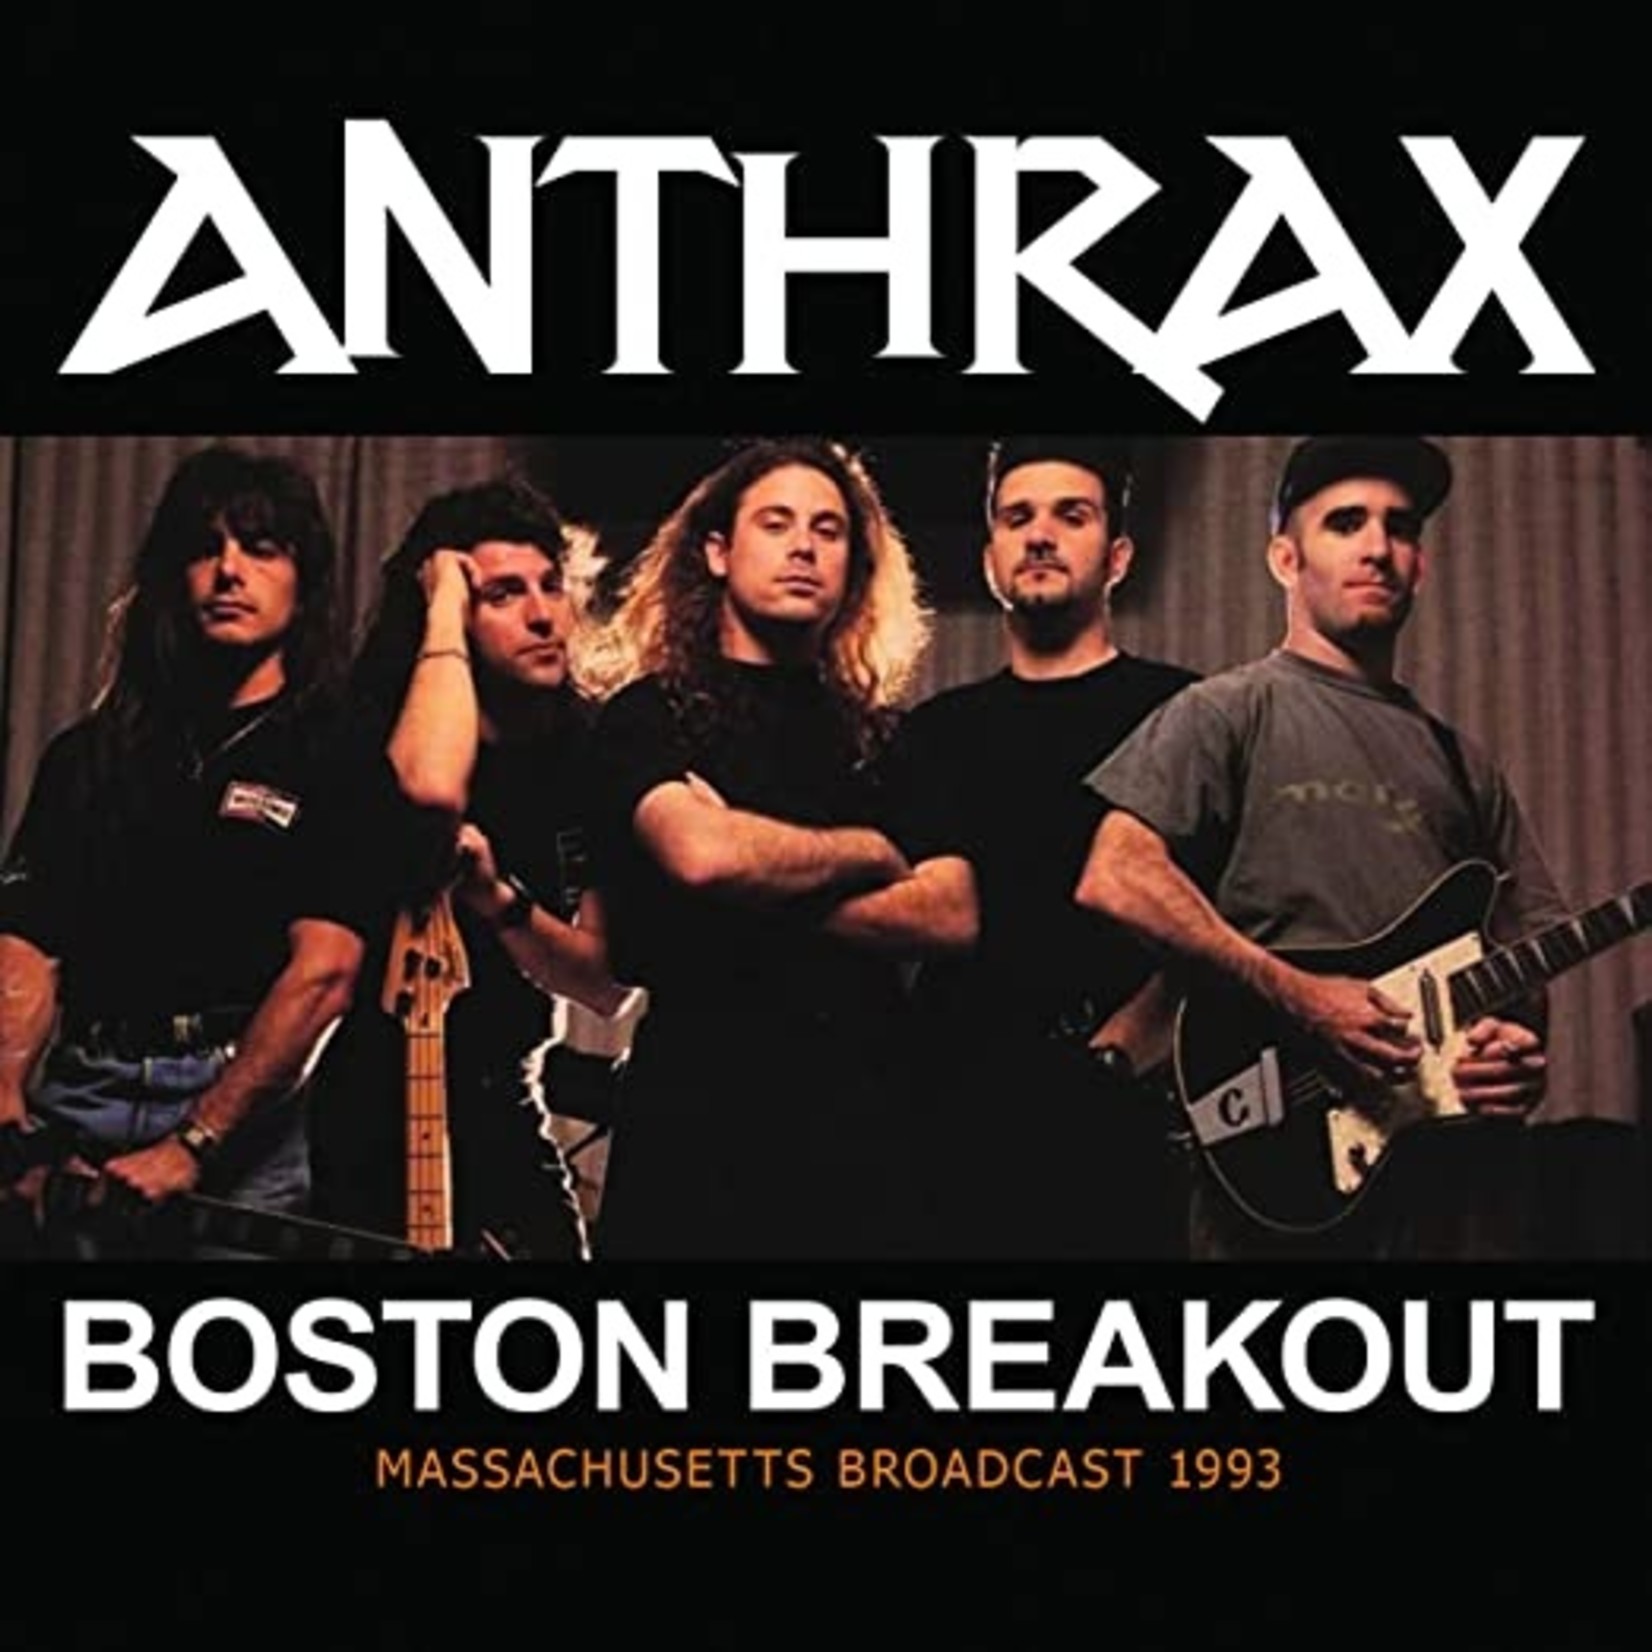 ANTHRAX - Boston breakout 2 x LP